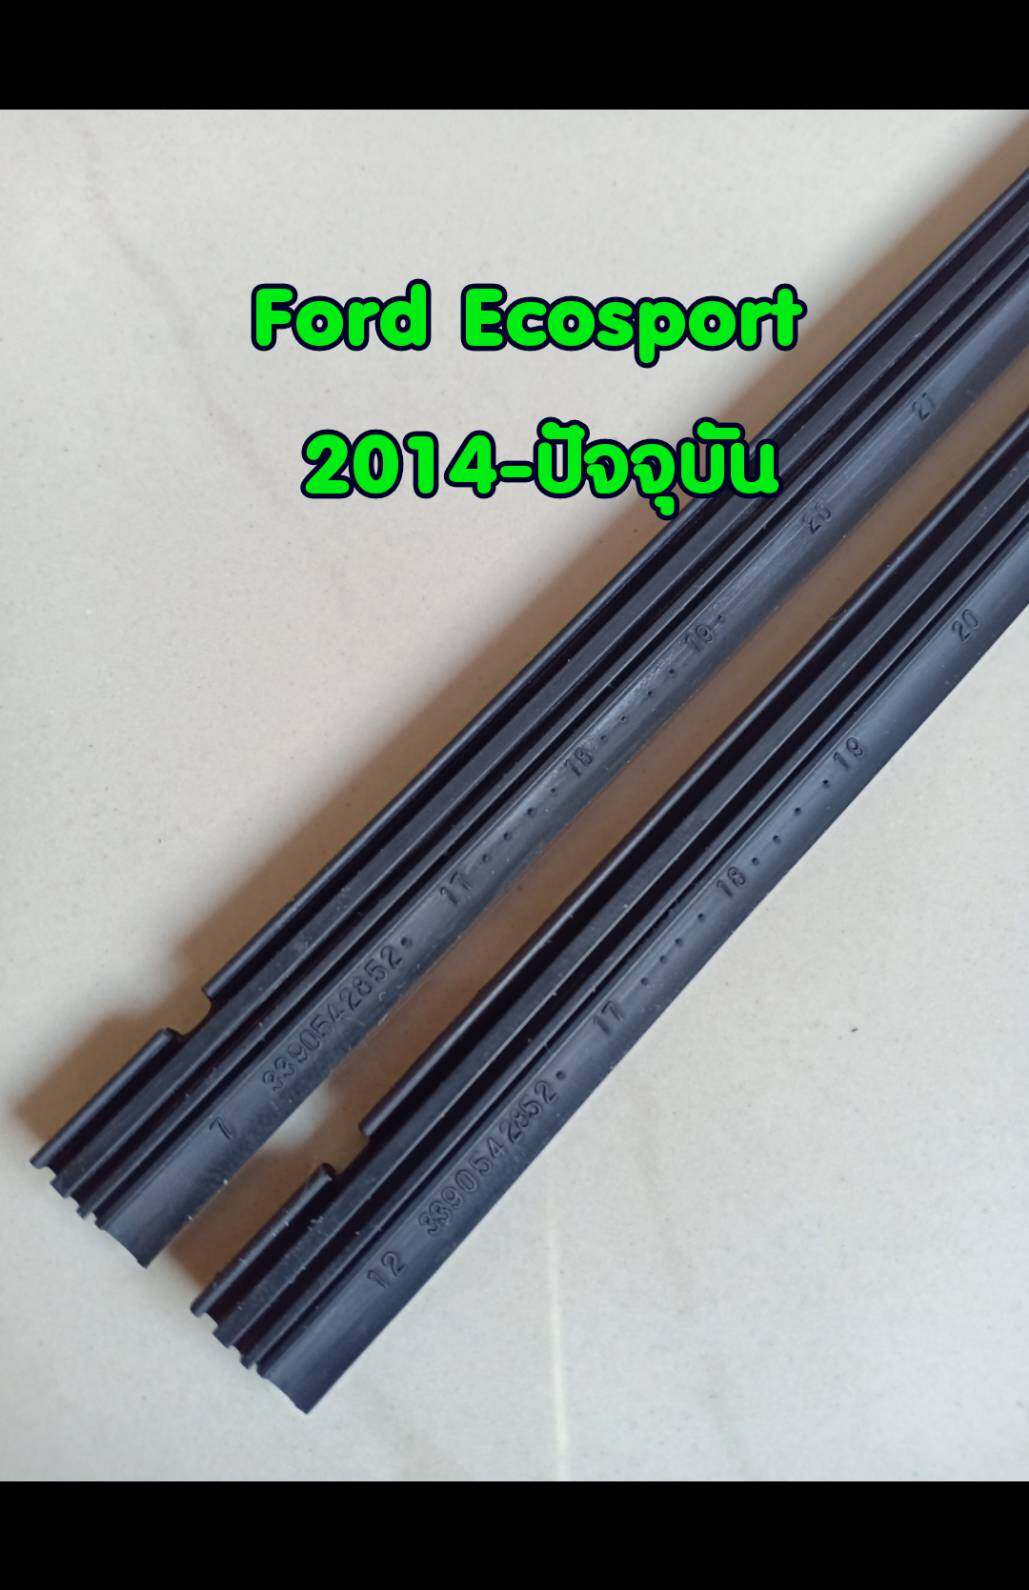 ยางปัดน้ำฝนแบบรีฟิลแท้ตรงรุ่น Ford Ecosport ปี 2014-ปัจจุบัน ขนาด 400 mm.และ 550 mm. จำนวน 1 คู่